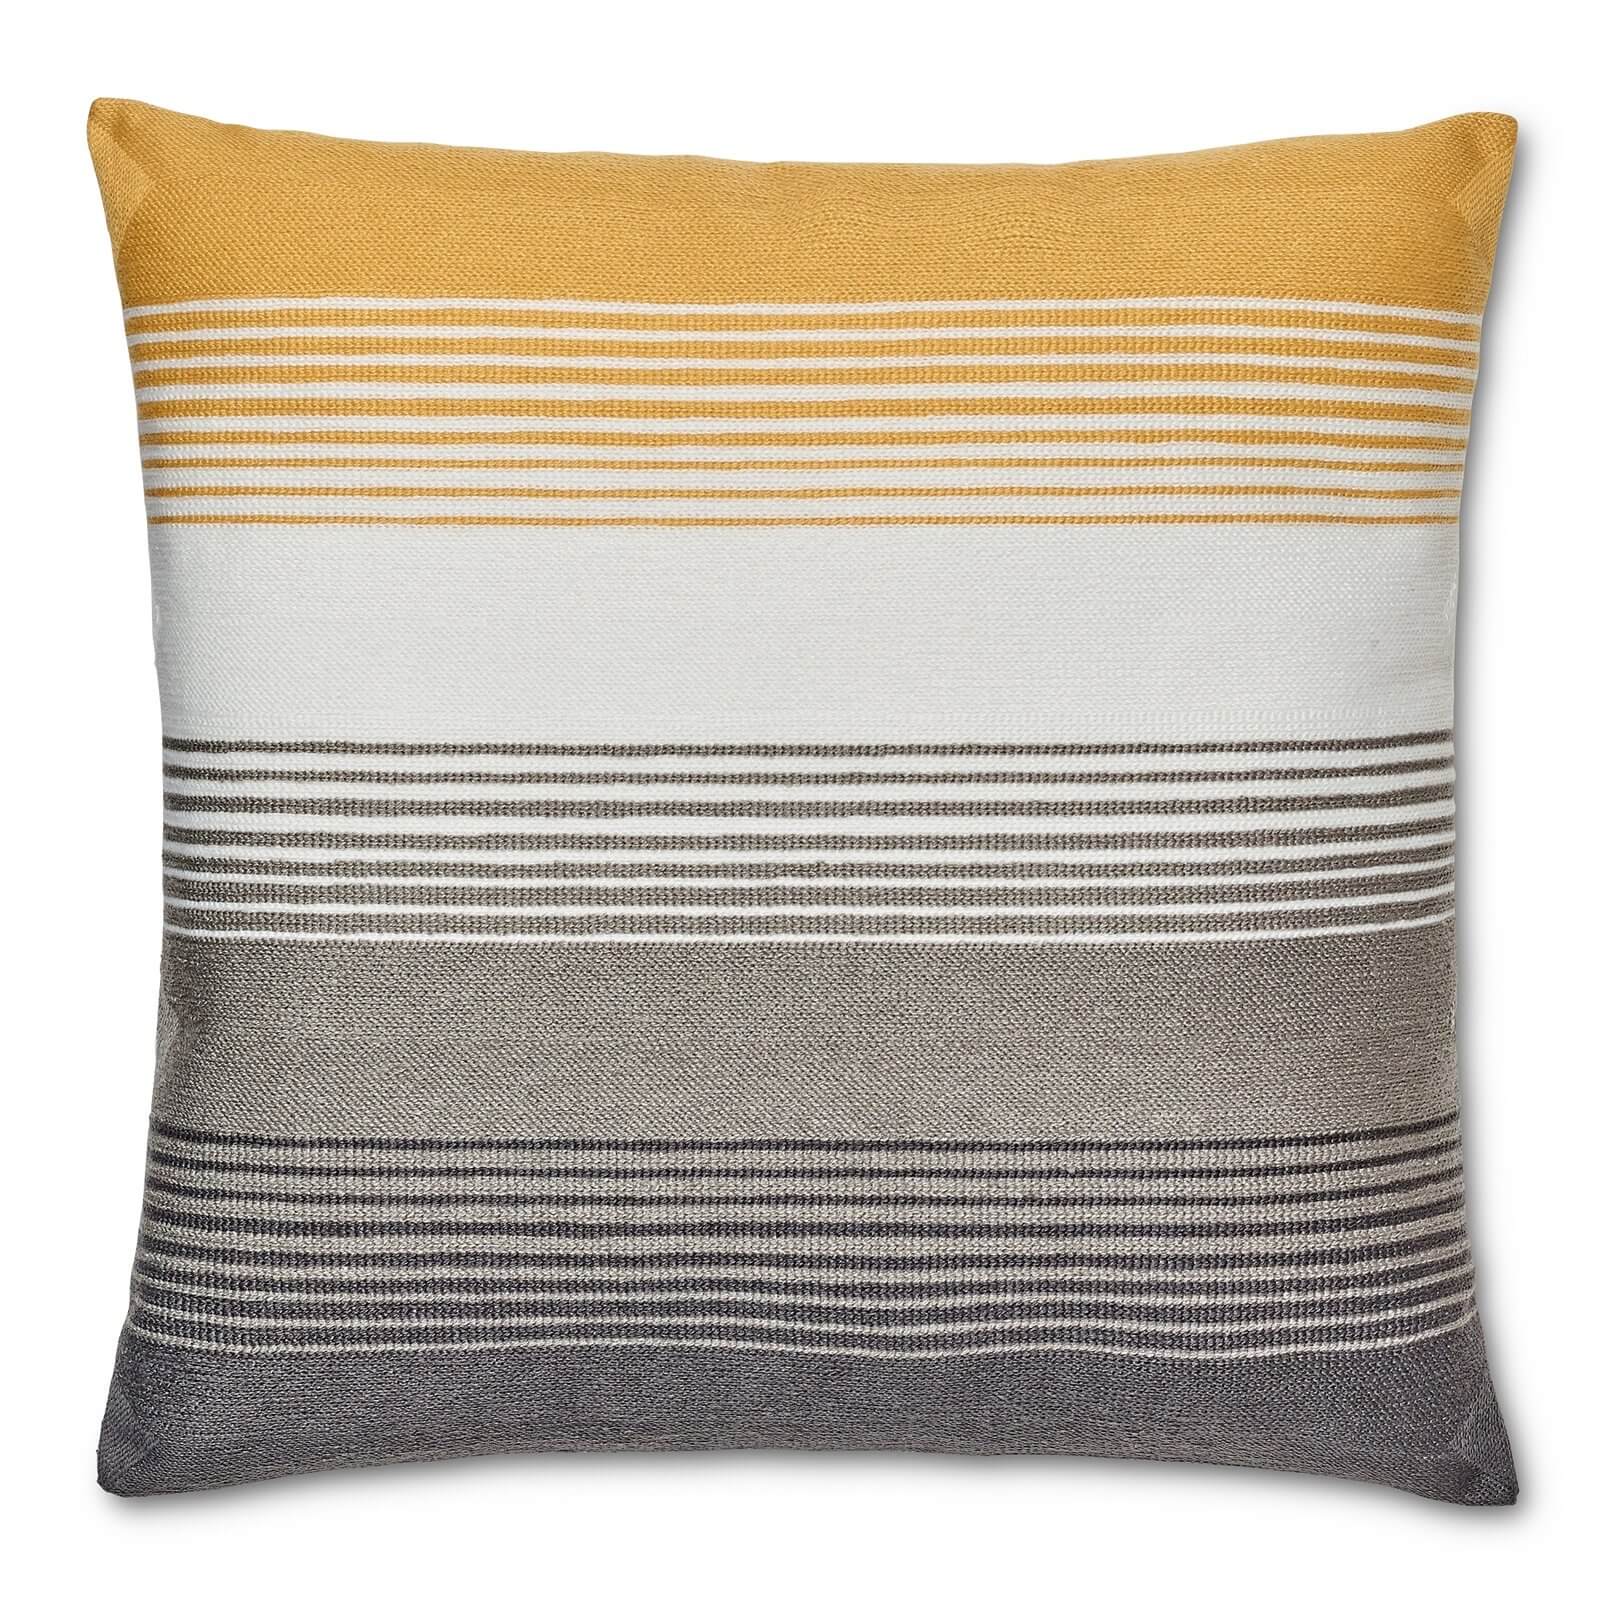 Striped Cushion - Ochre & Grey